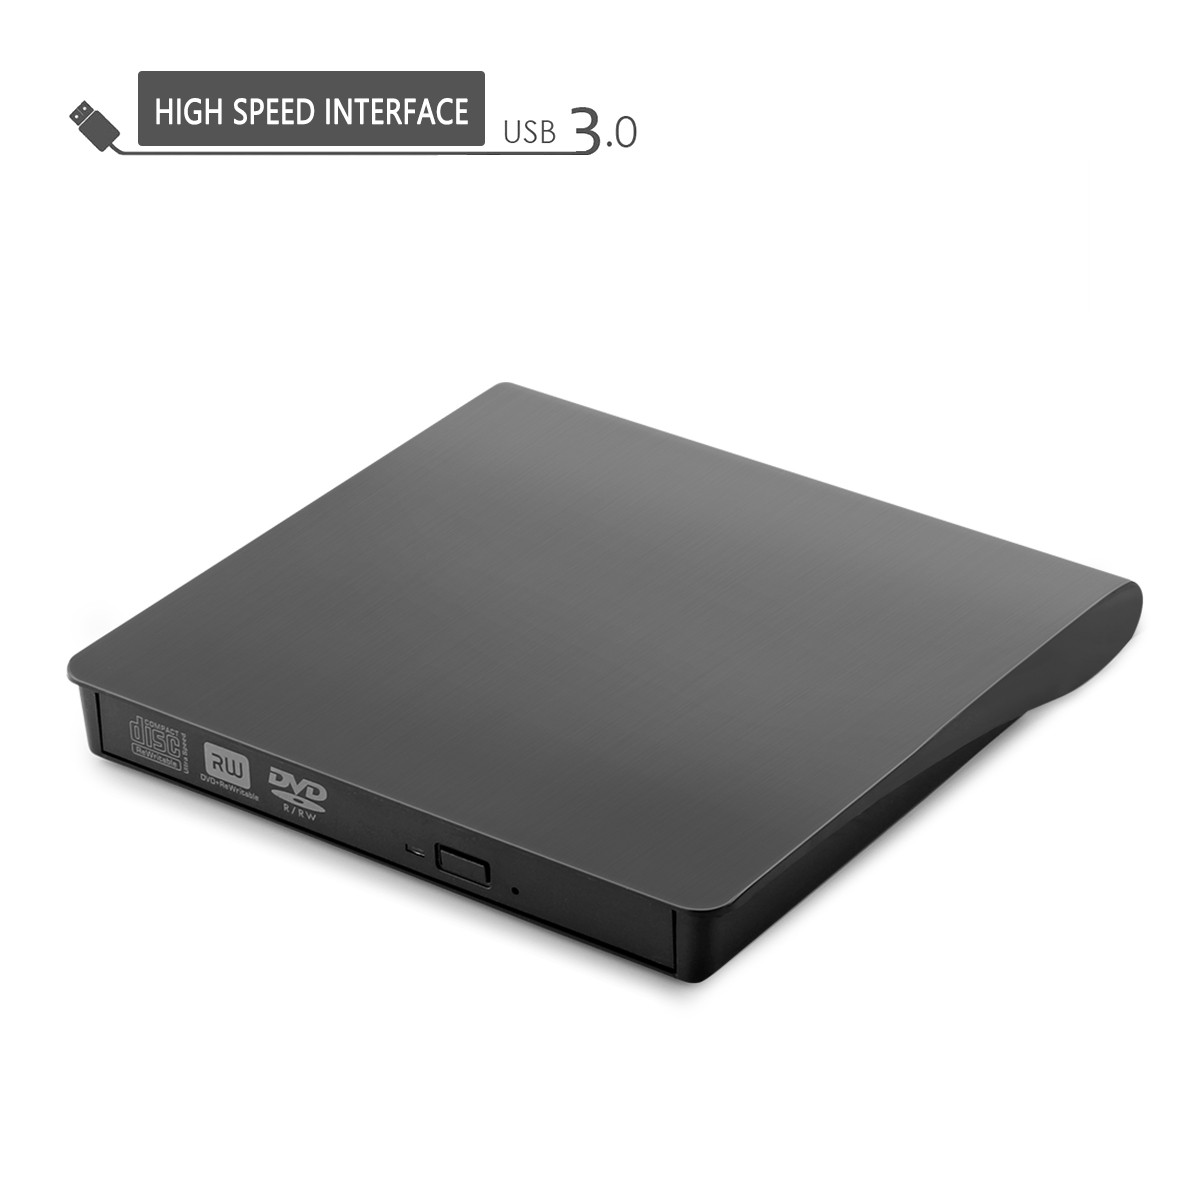 Đầu Đọc Đĩa Dvd Gắn Ngoài Cổng Usb 3.0 Cho Laptop Notebook Pc Windows Xp / Vista / 7 / 8 / 10